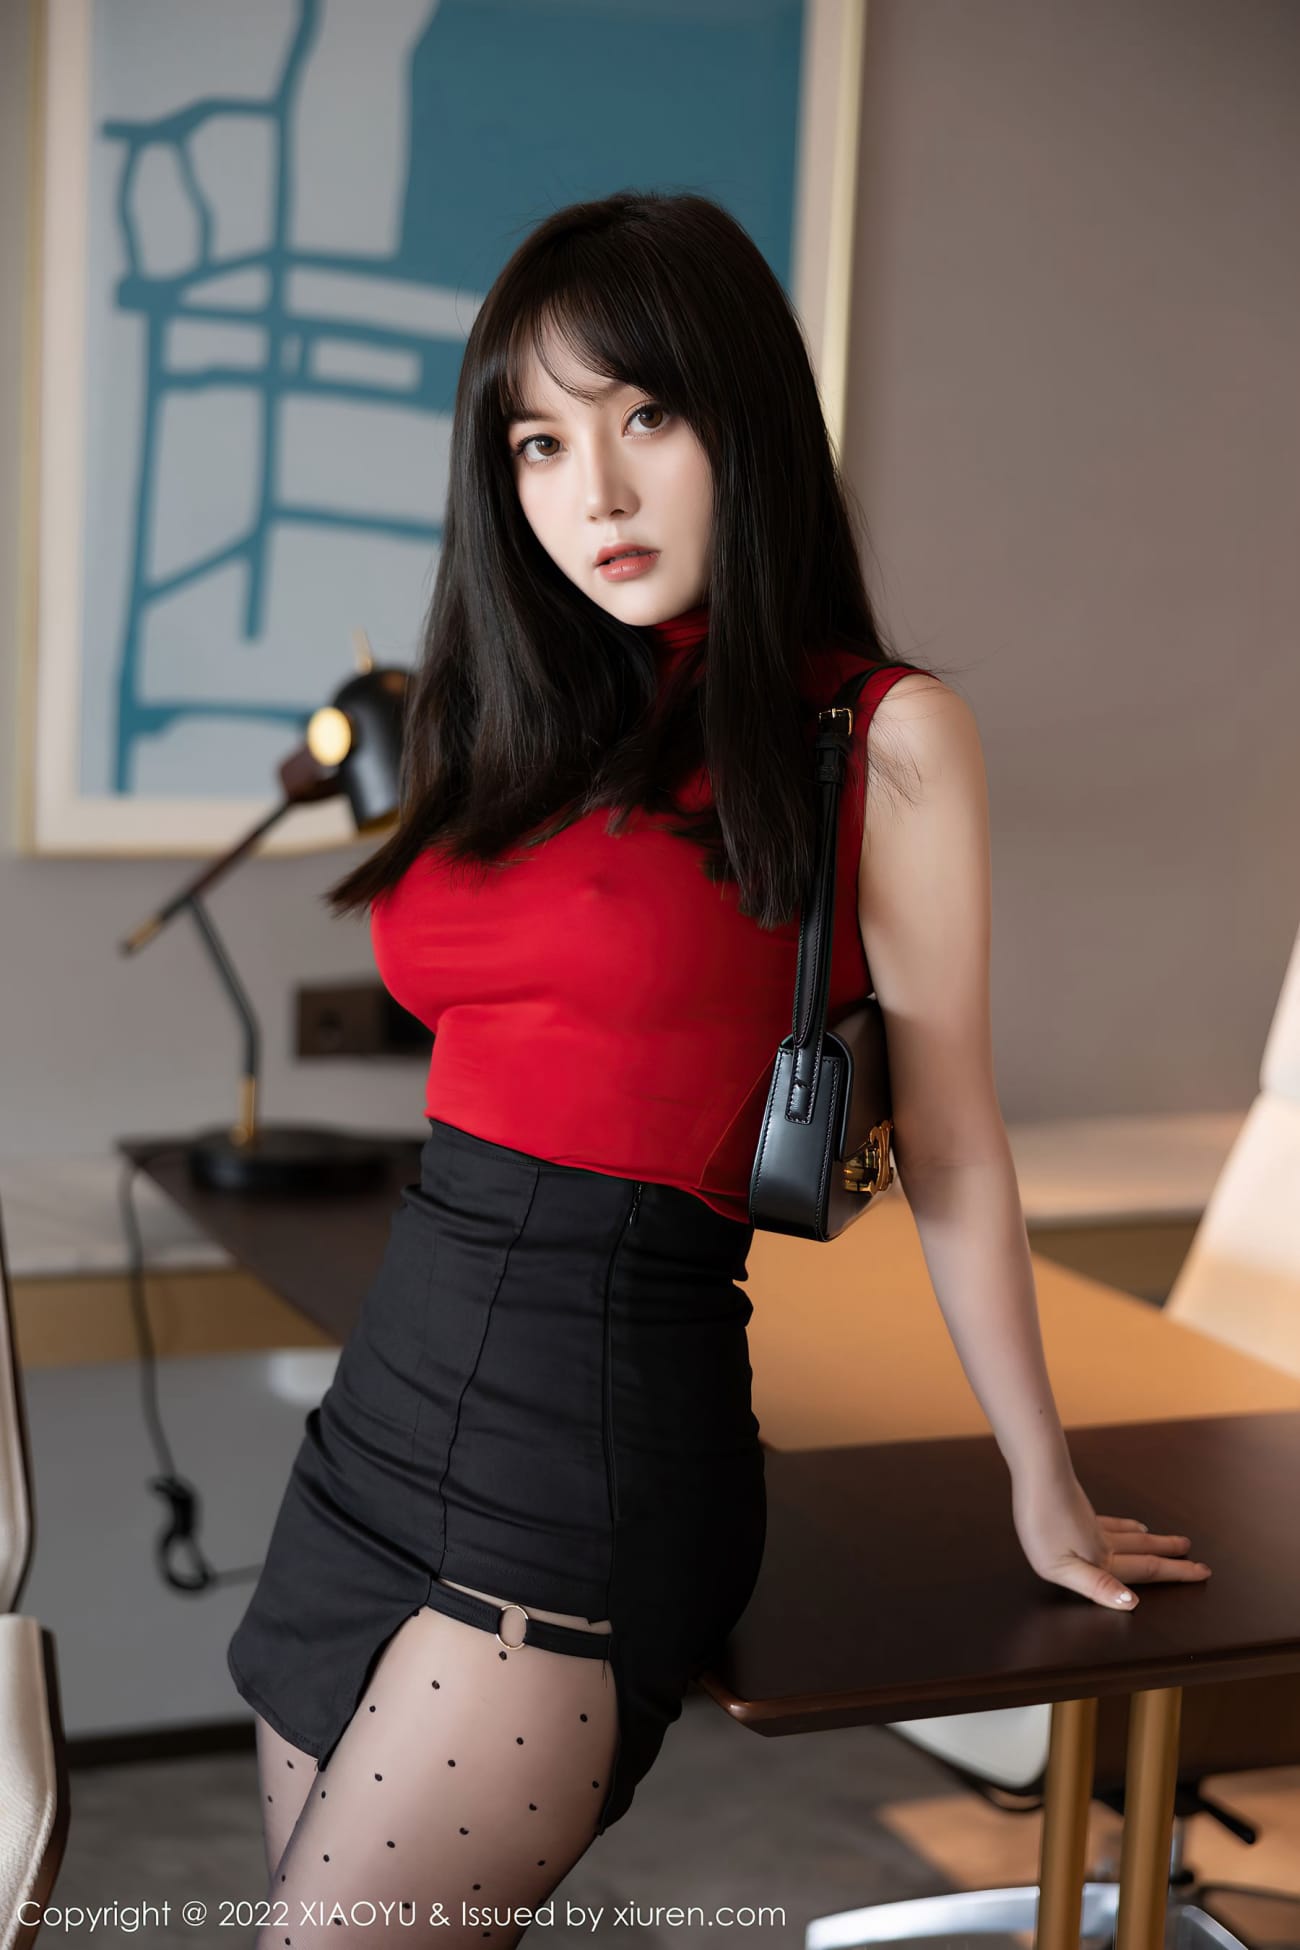 模特豆瓣酱 - 红色上衣+黑色短裙性感写真